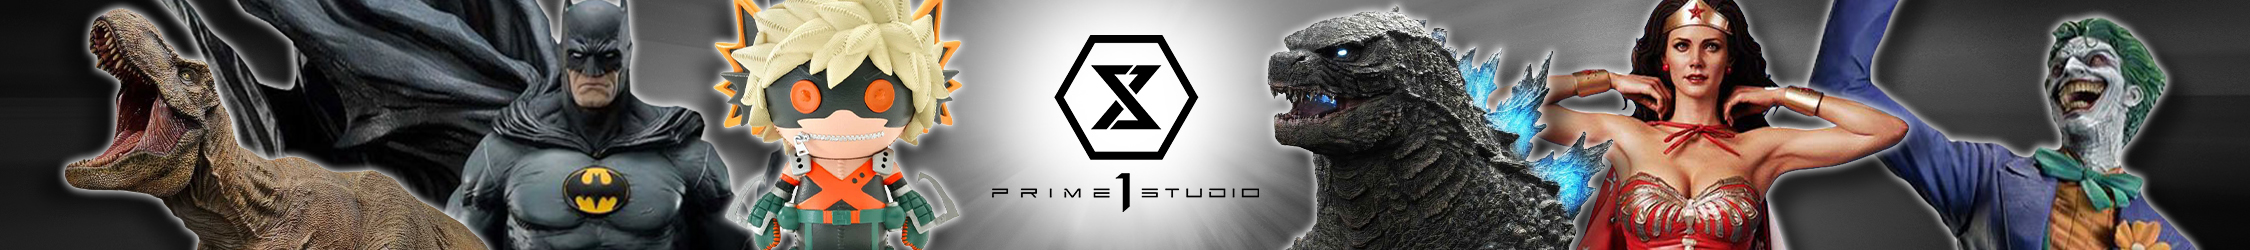 Prime 1 Studios